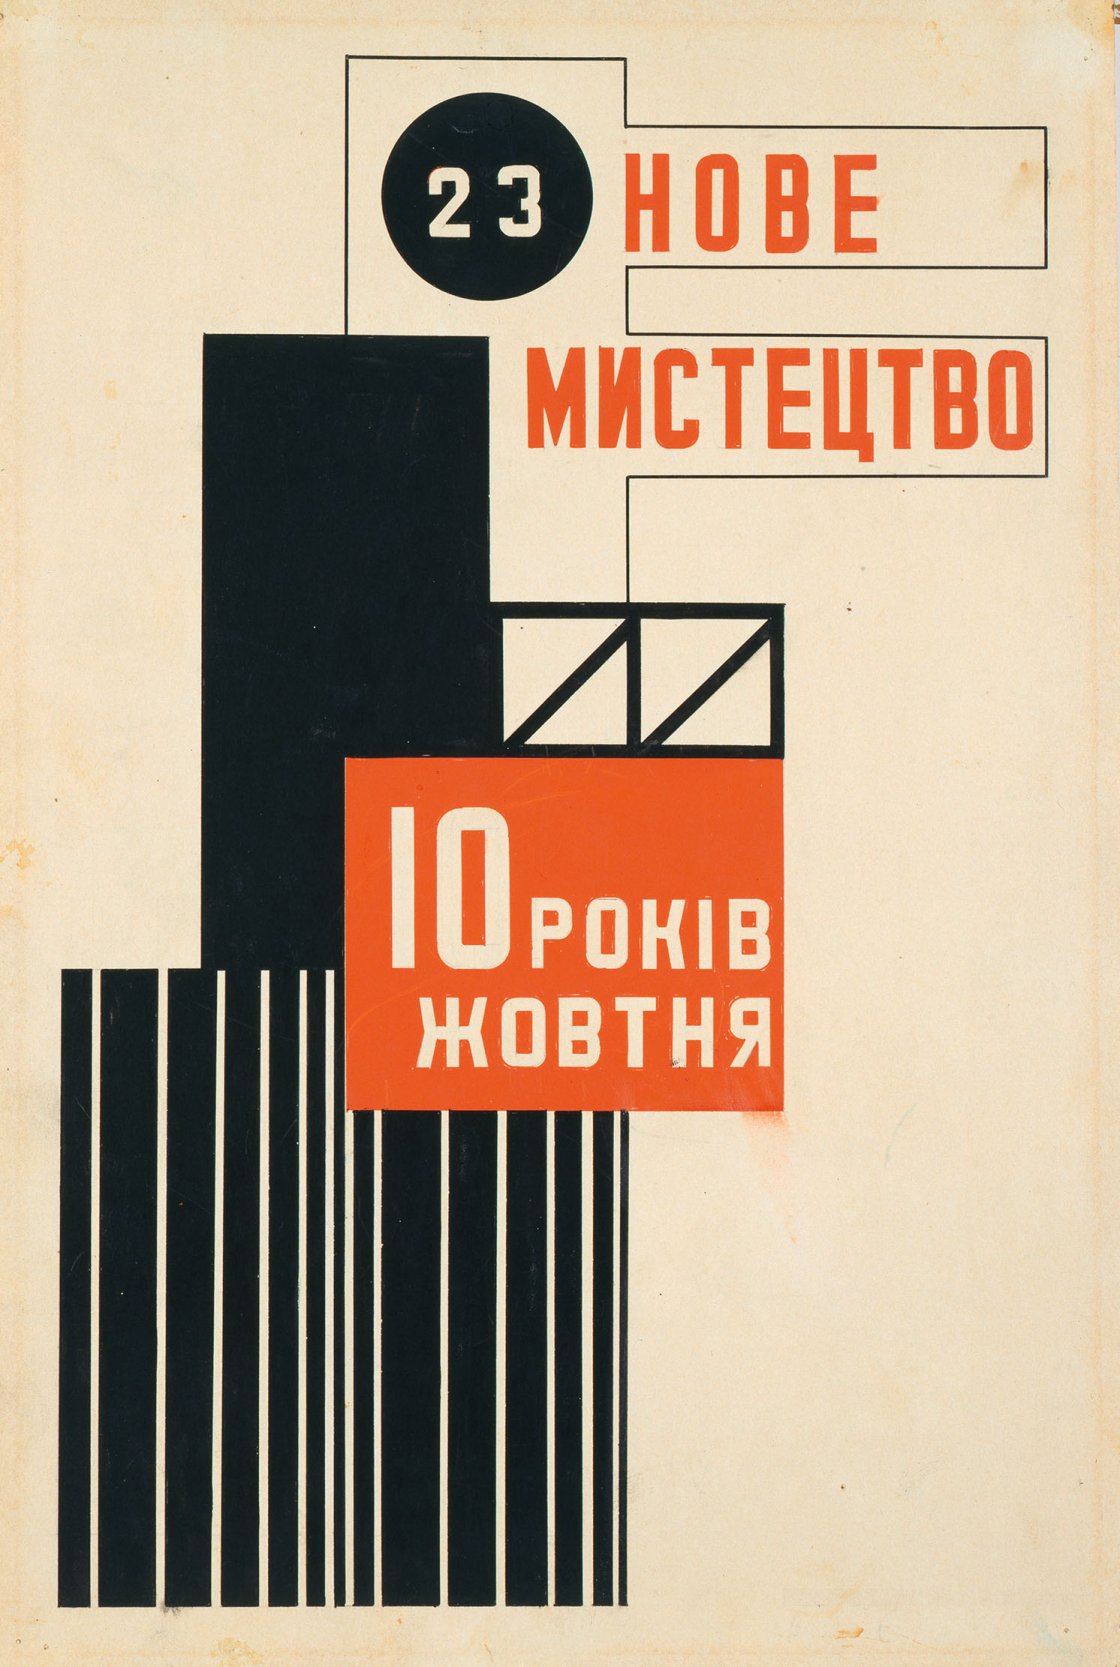 Vasyl Yermilov. Nove Mystetstvo (Arte Nuevo. Diseño para portada de revista), hacia 1927